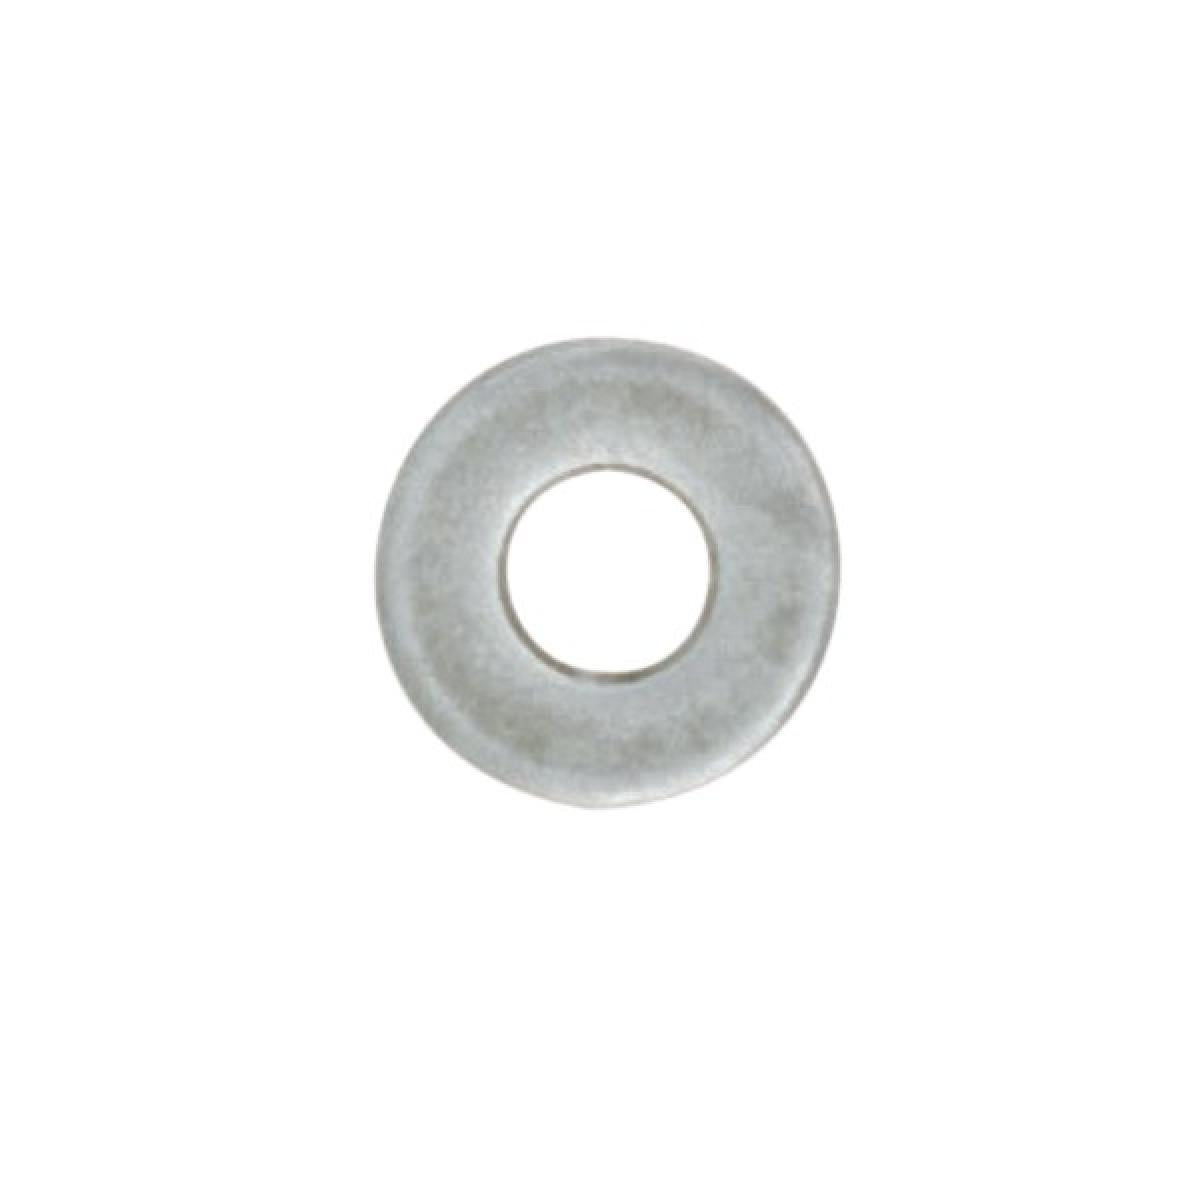 Satco 90-1652 Steel Washer 1/8 IP Slip 18 Gauge Unfinished 7/8" Diameter